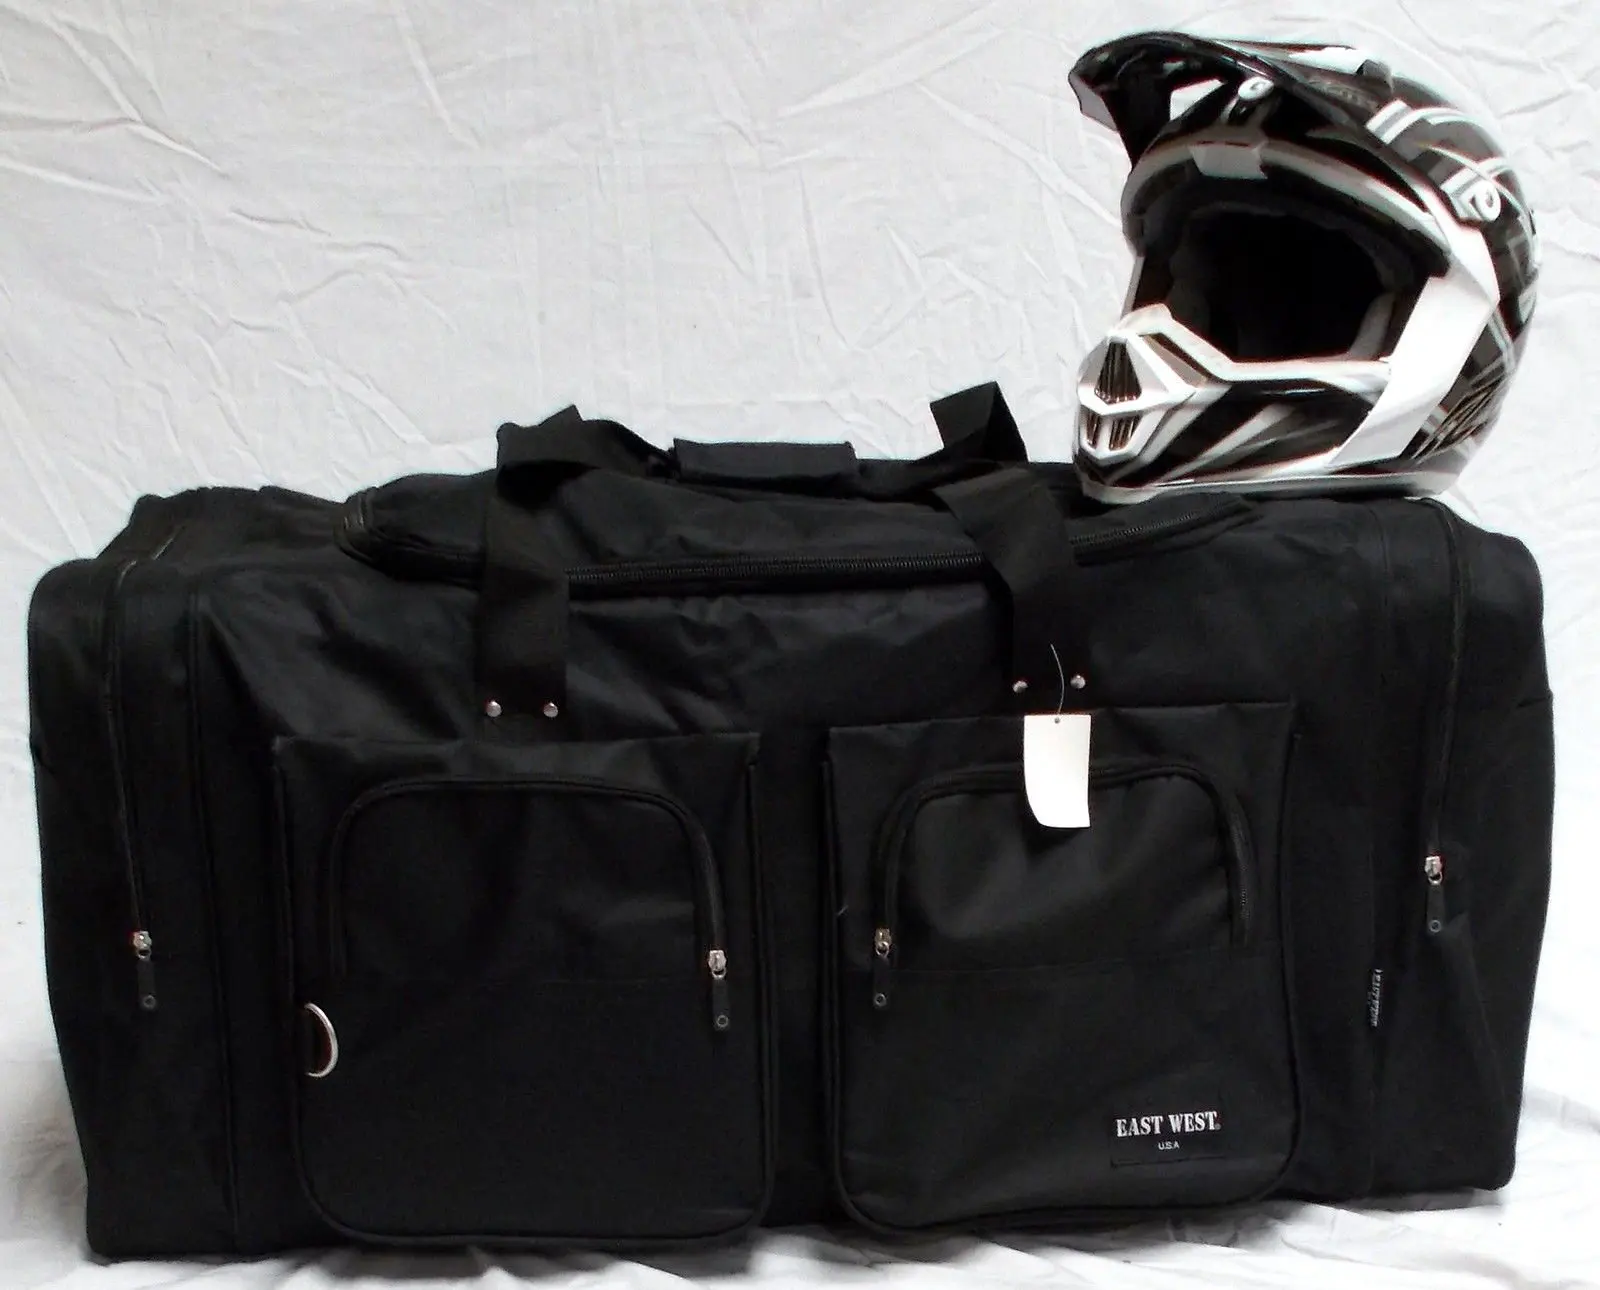 Cheap Dirt Bike Gear Bag, find Dirt Bike Gear Bag deals on line at www.neverfullmm.com